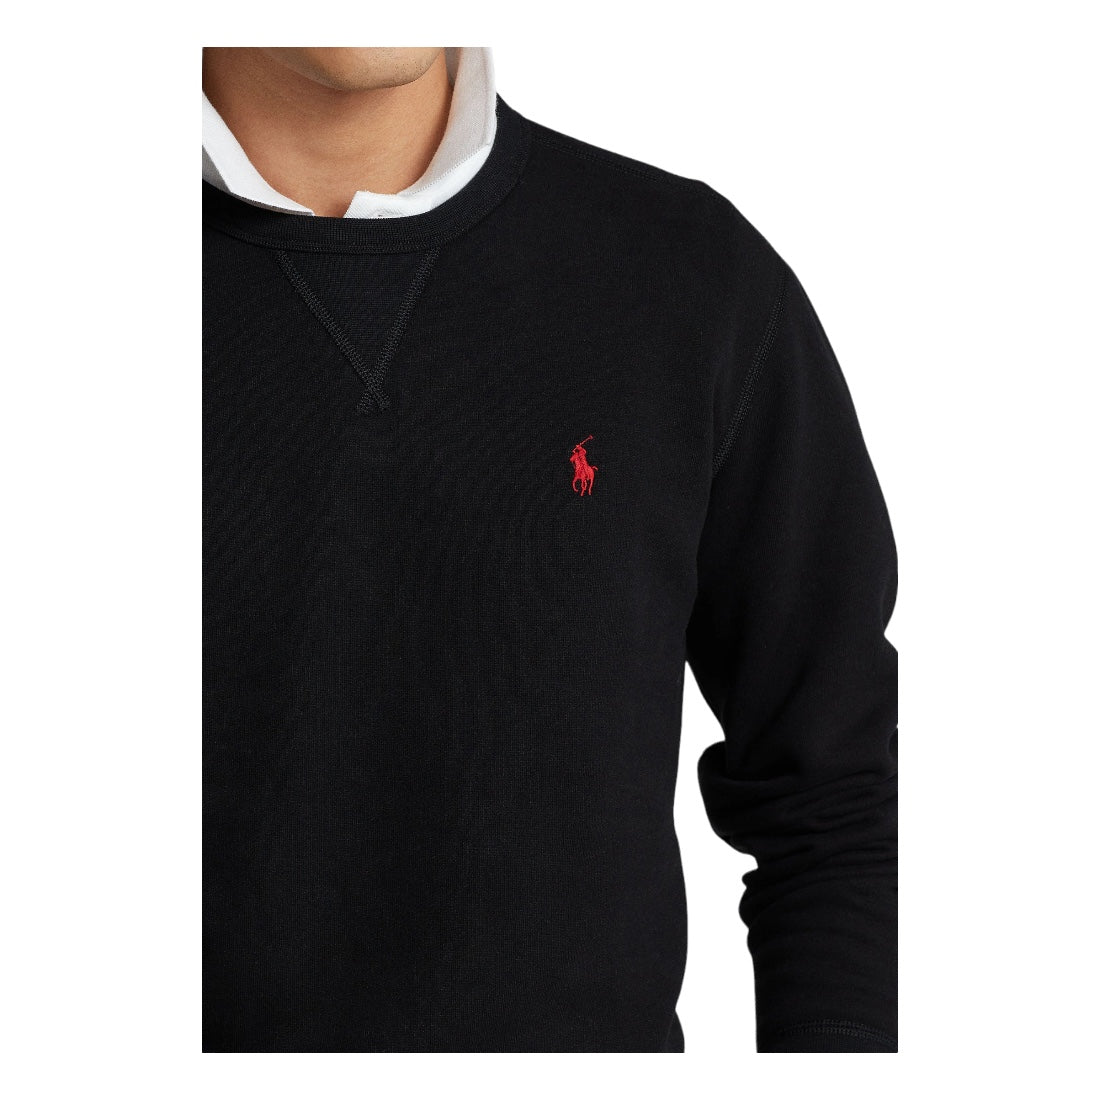 Polo Ralph Lauren Fleece Sweatshirt Sort